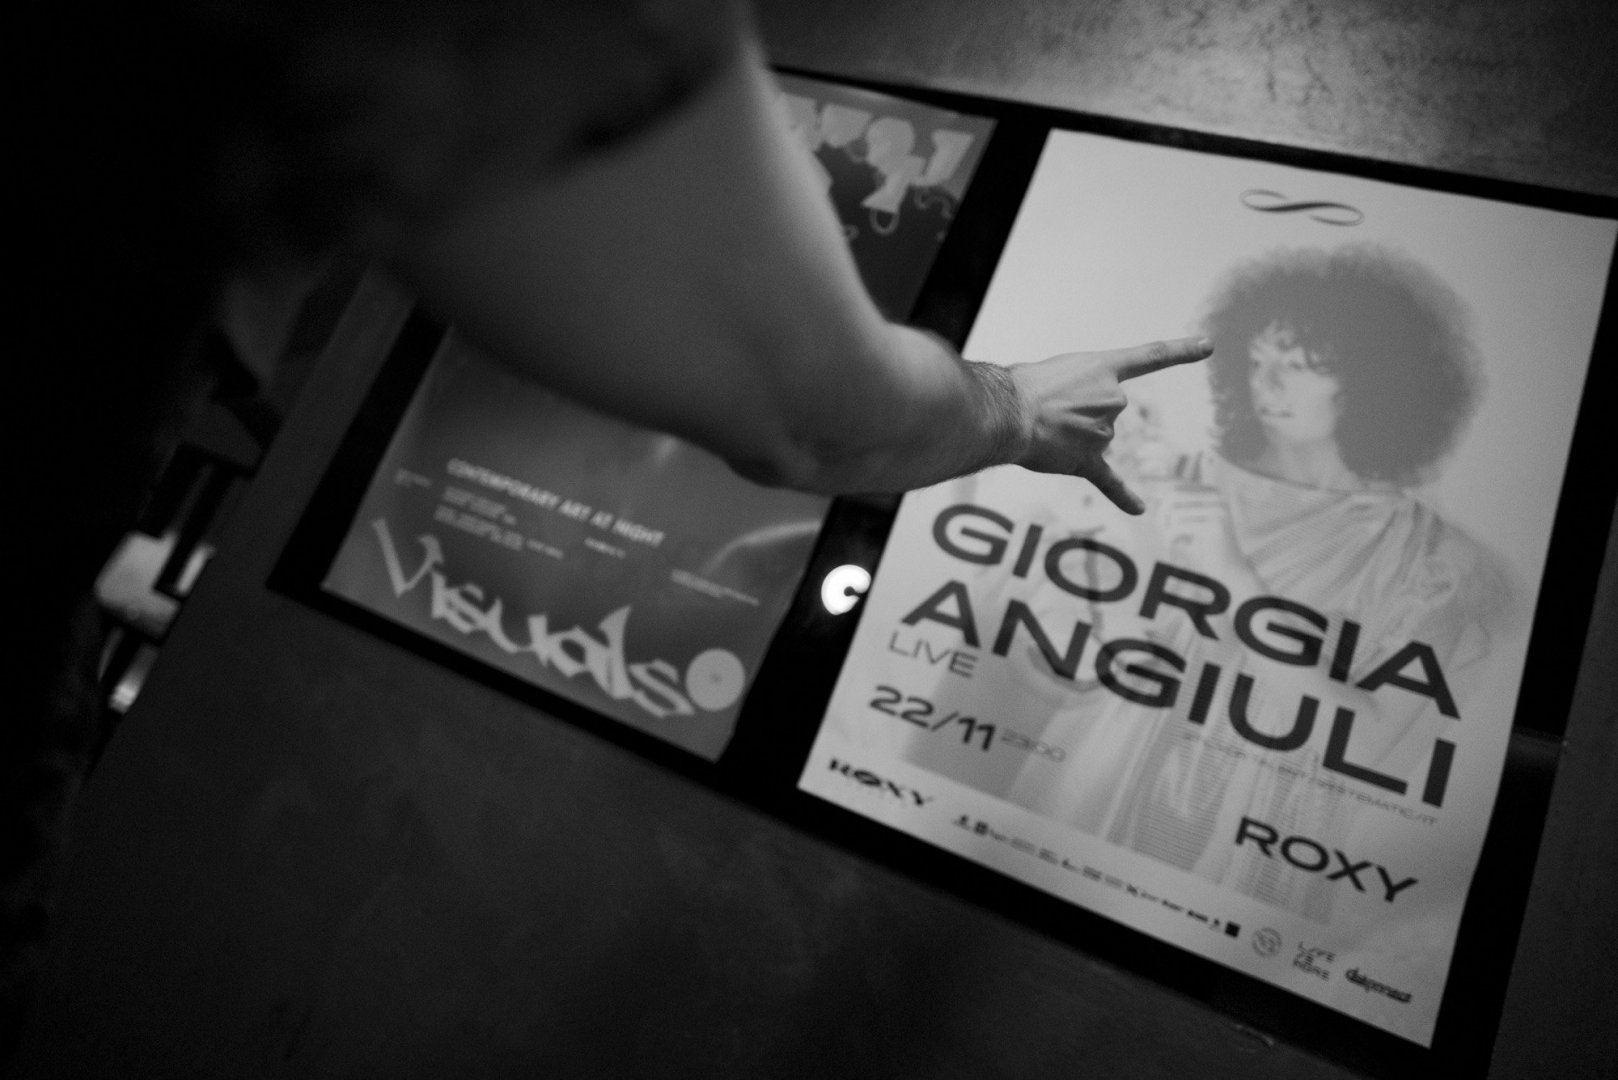 Giorgia Angiuli | ROXY Prague